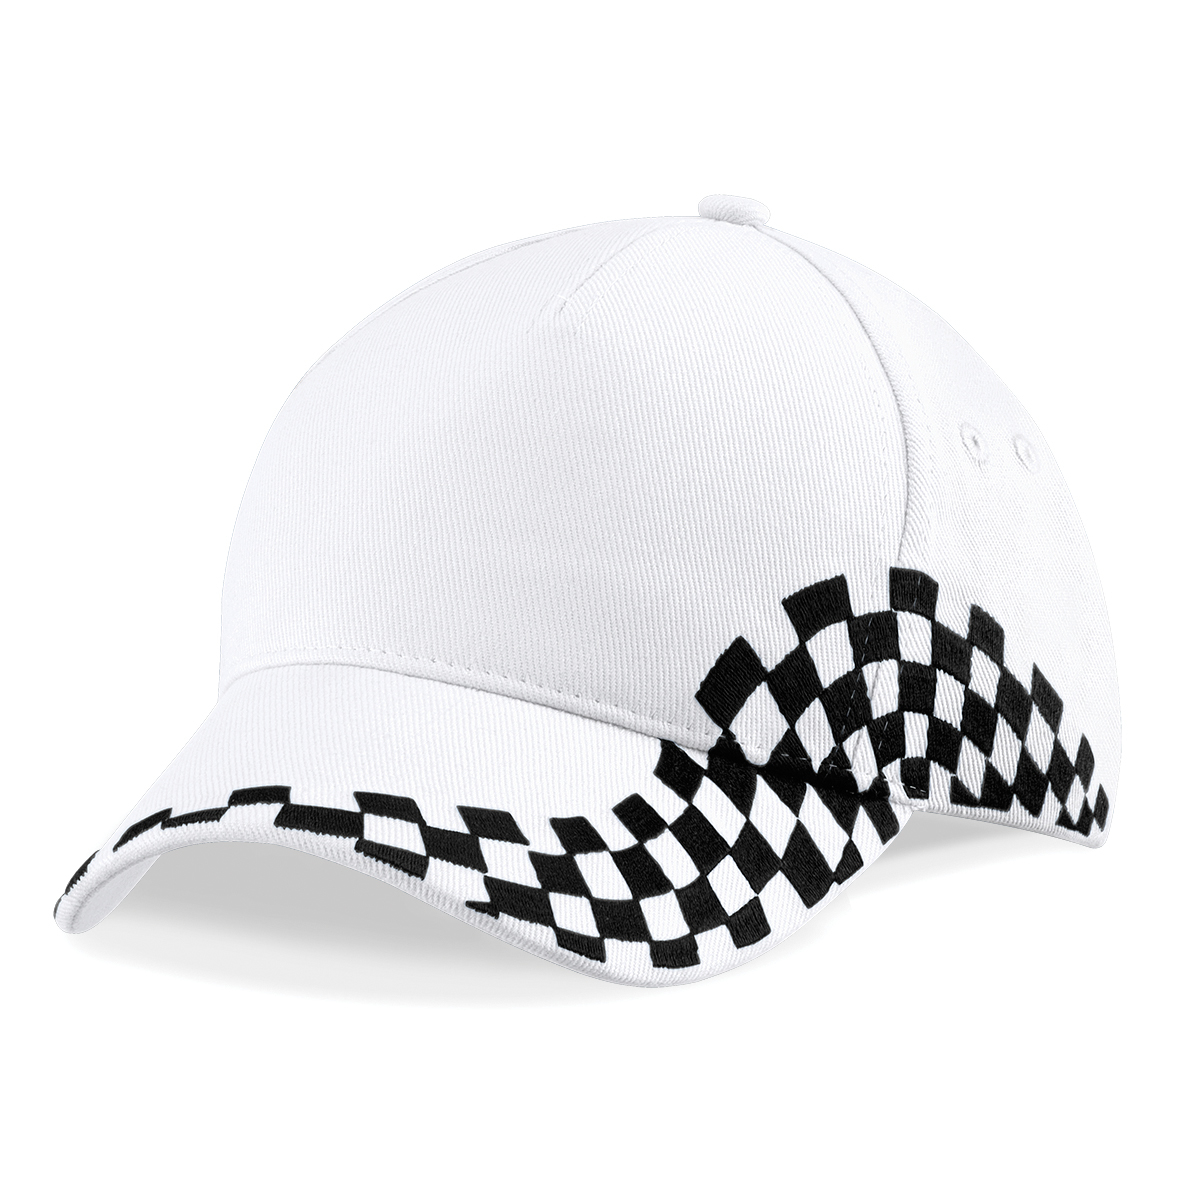 Grand Prix Cap in white with black checkerboard